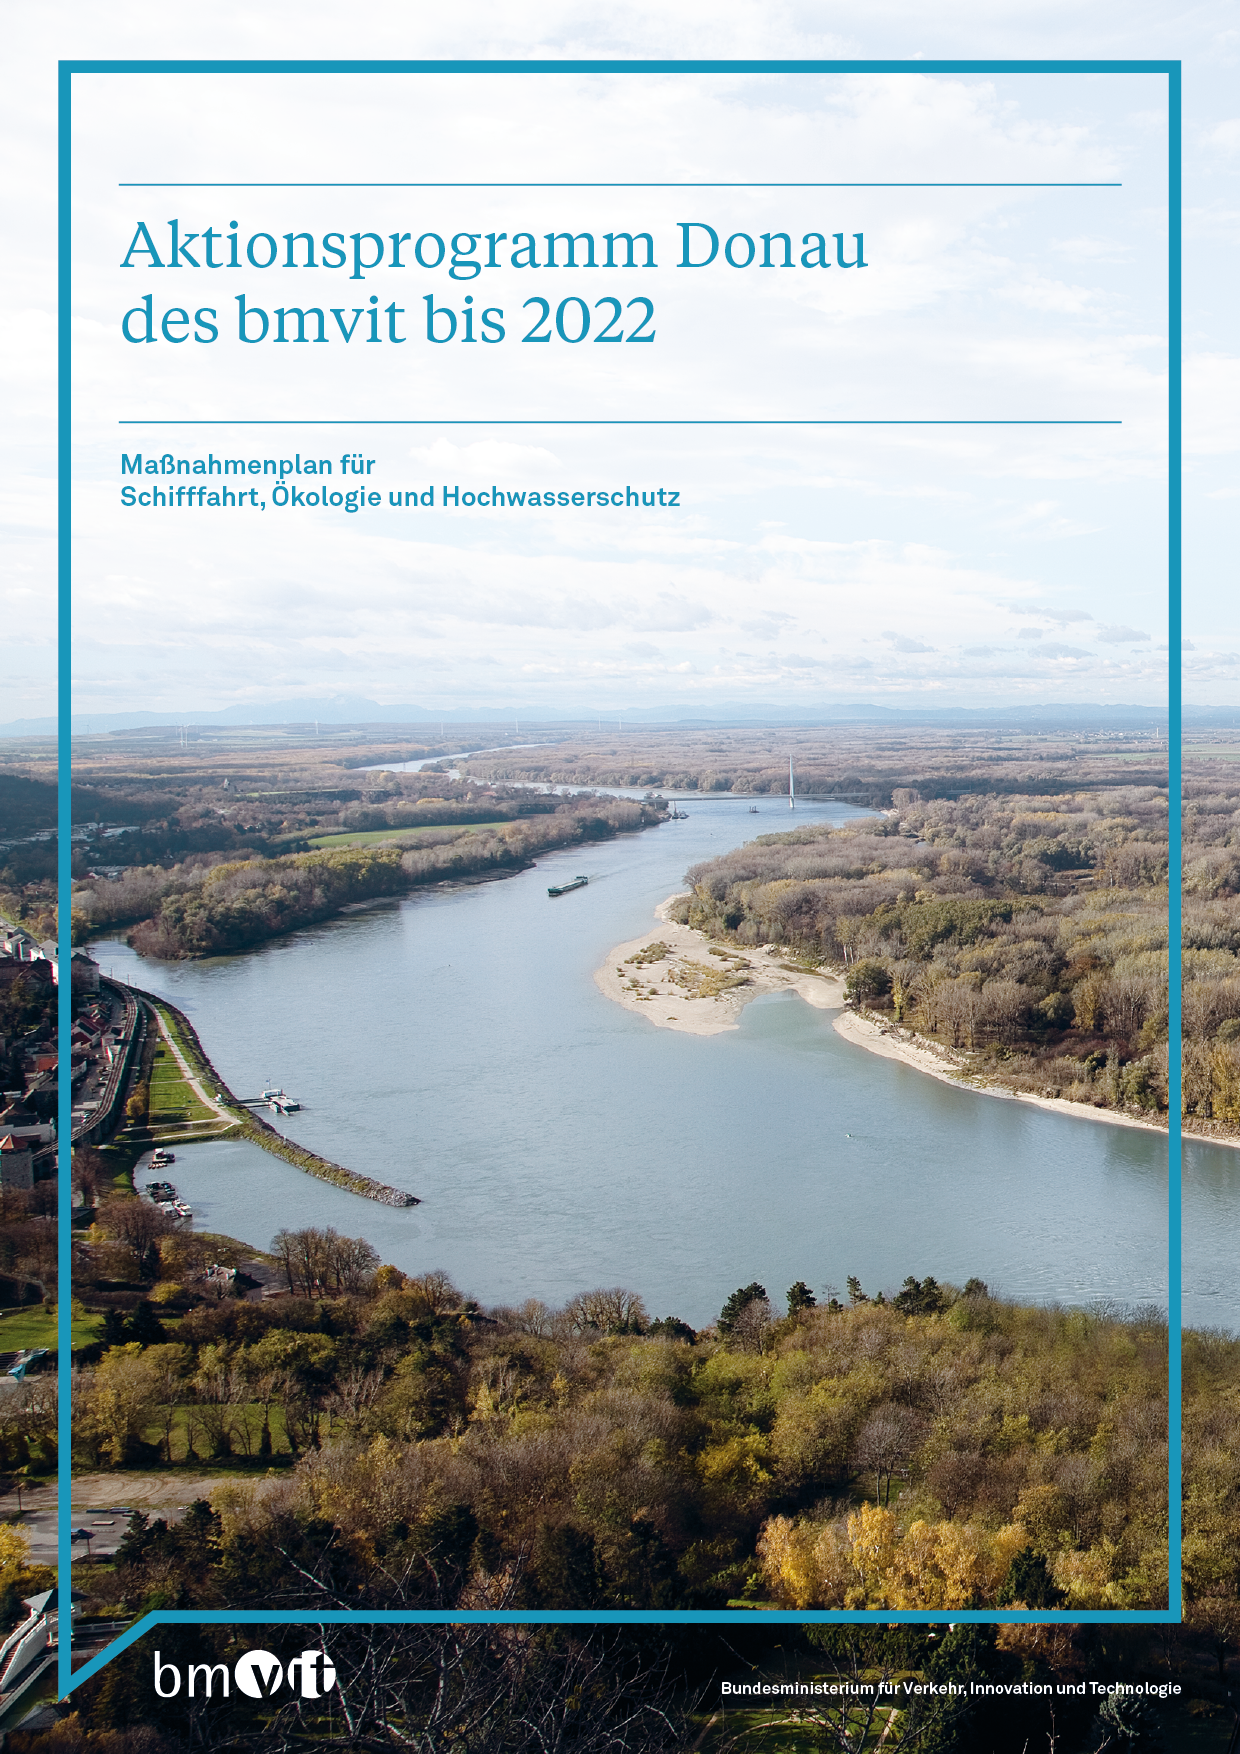 Bild mit Link zum Aktionsprogramm Donau bis 2022